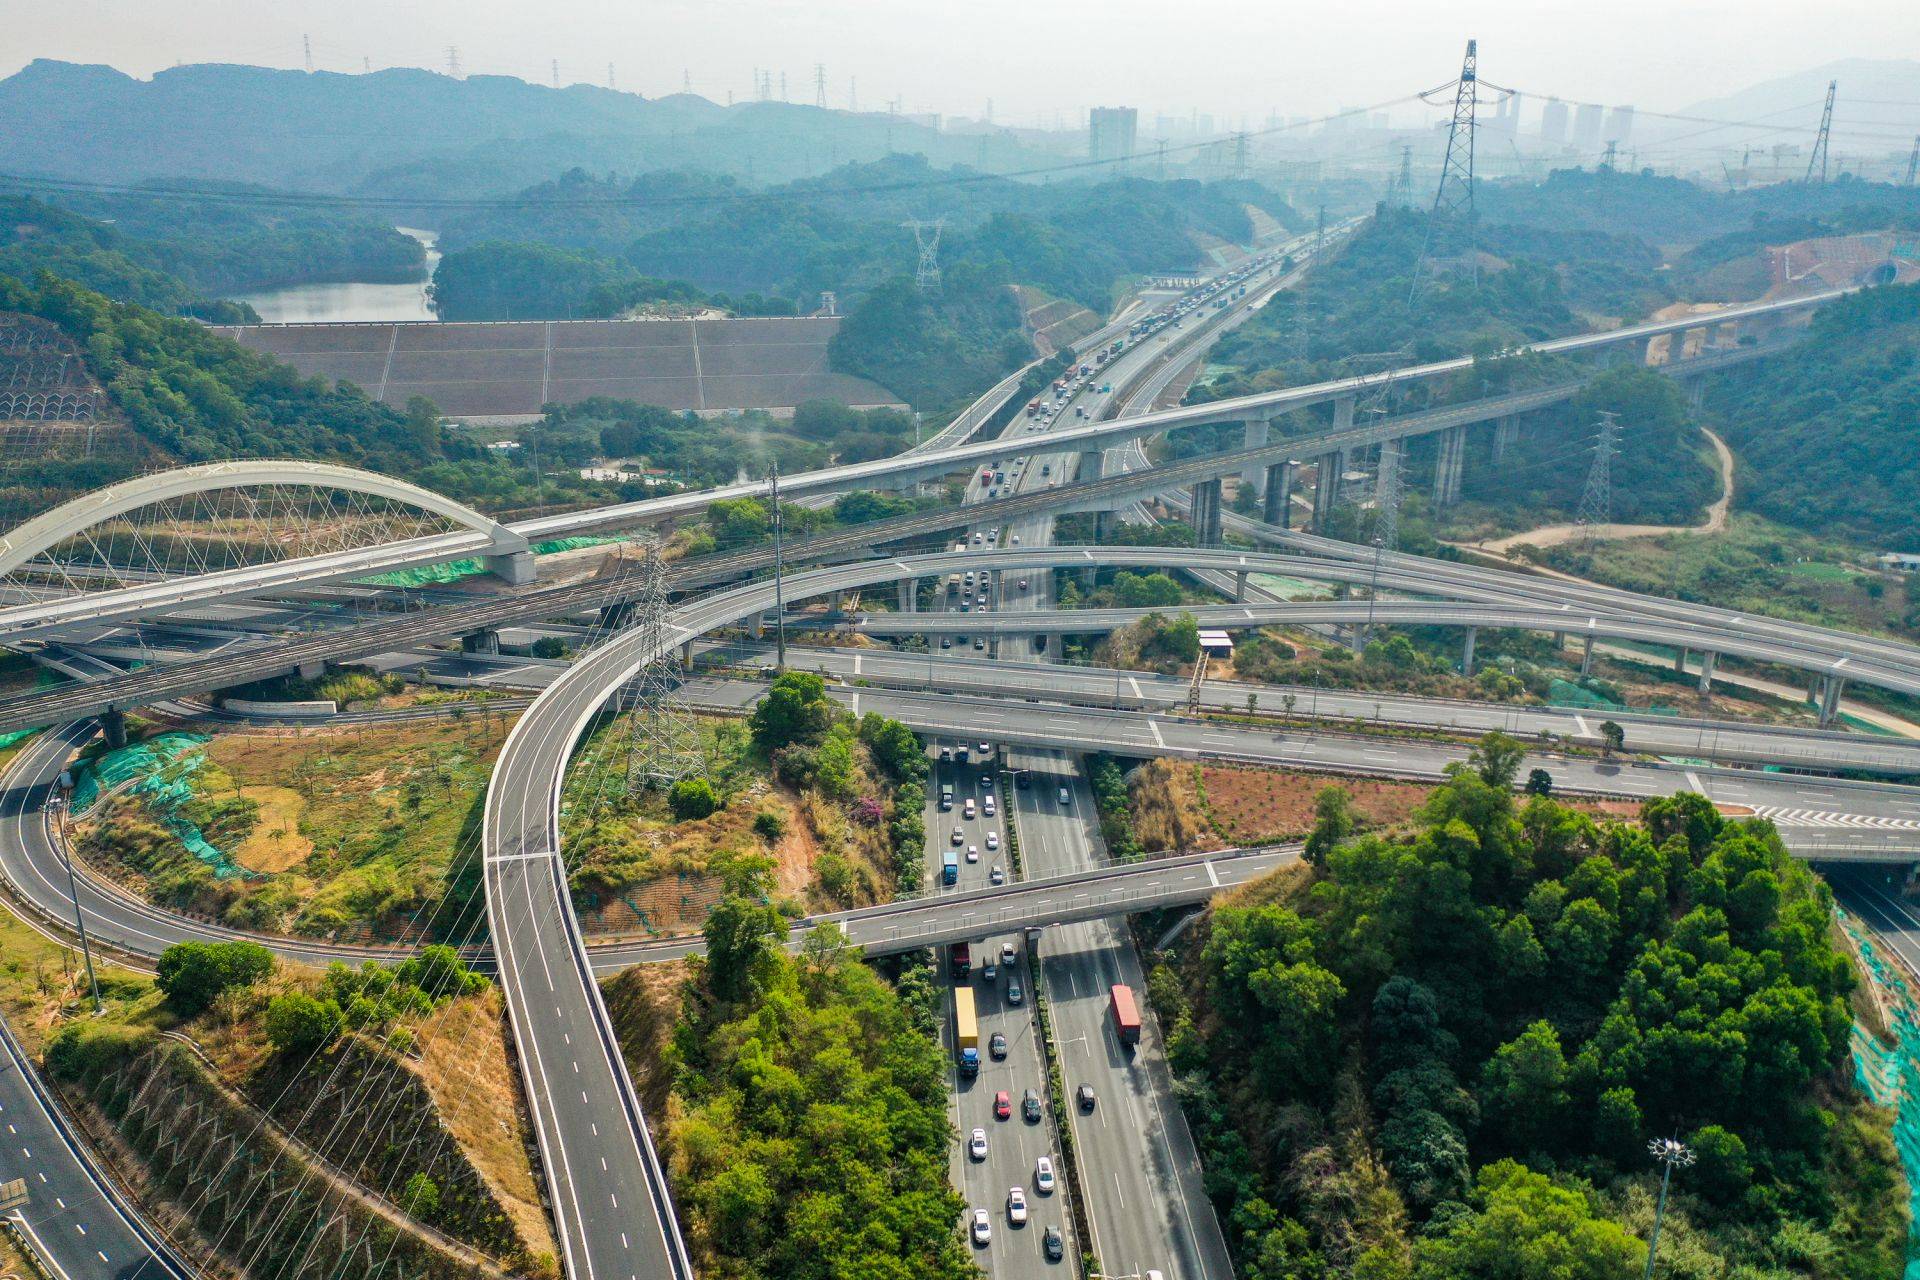 此外,深圳外环高速作为深圳北部区域东西向交通互联互通的重要骨干线